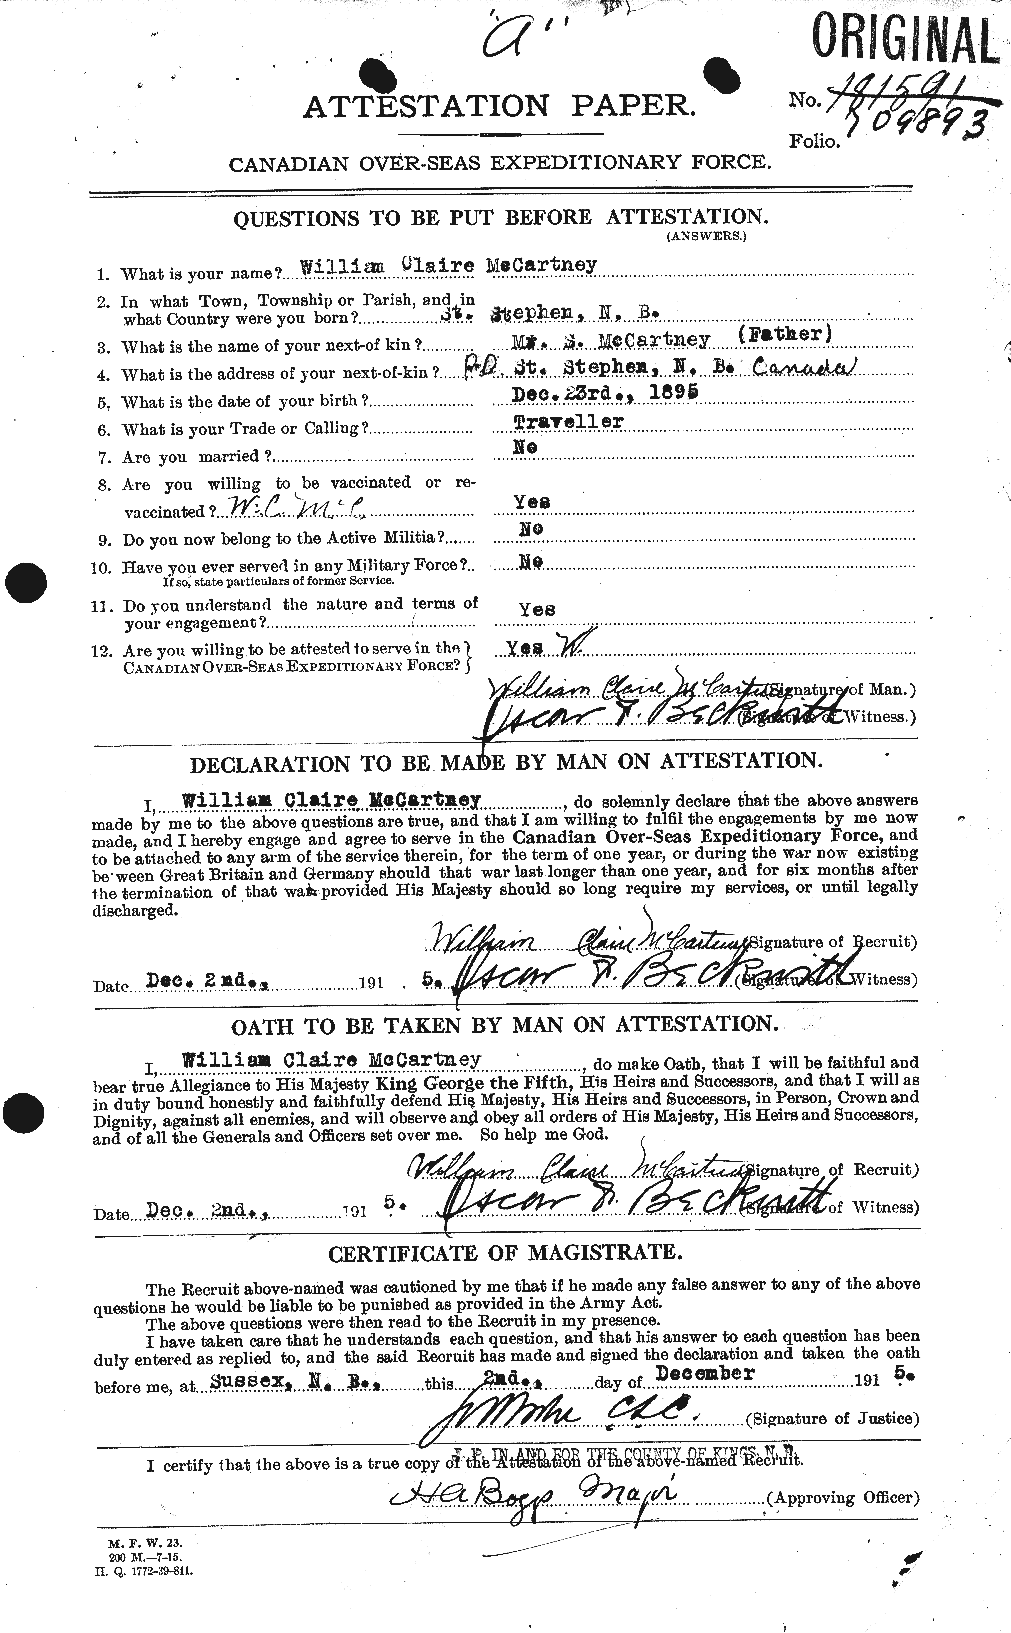 Dossiers du Personnel de la Première Guerre mondiale - CEC 133524a